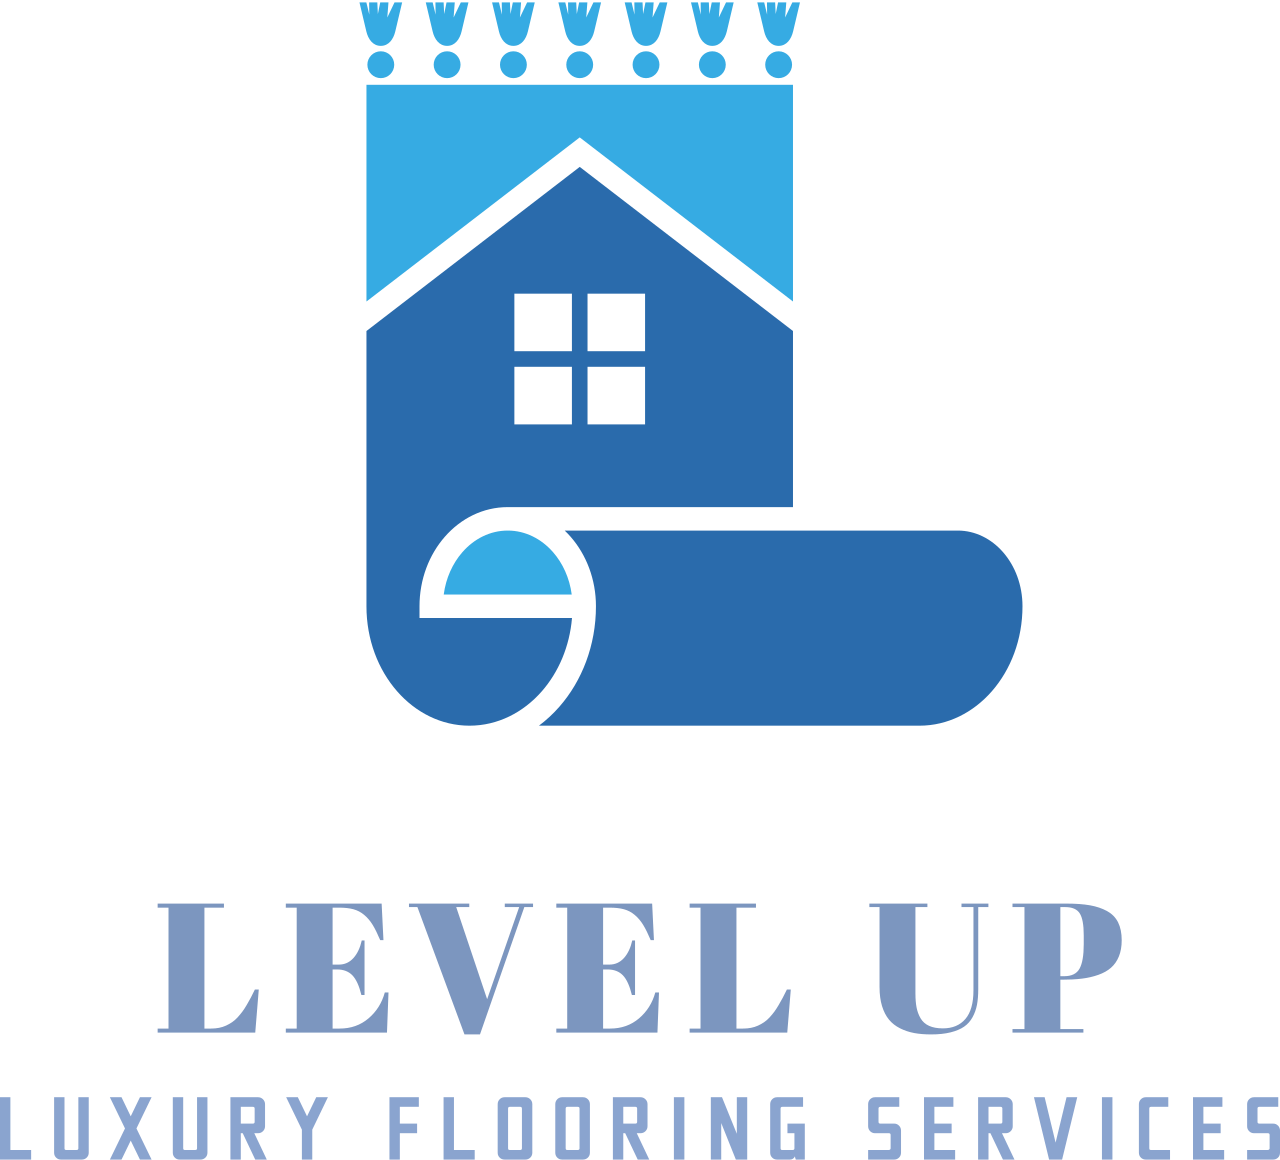 LEVEL UP's logo